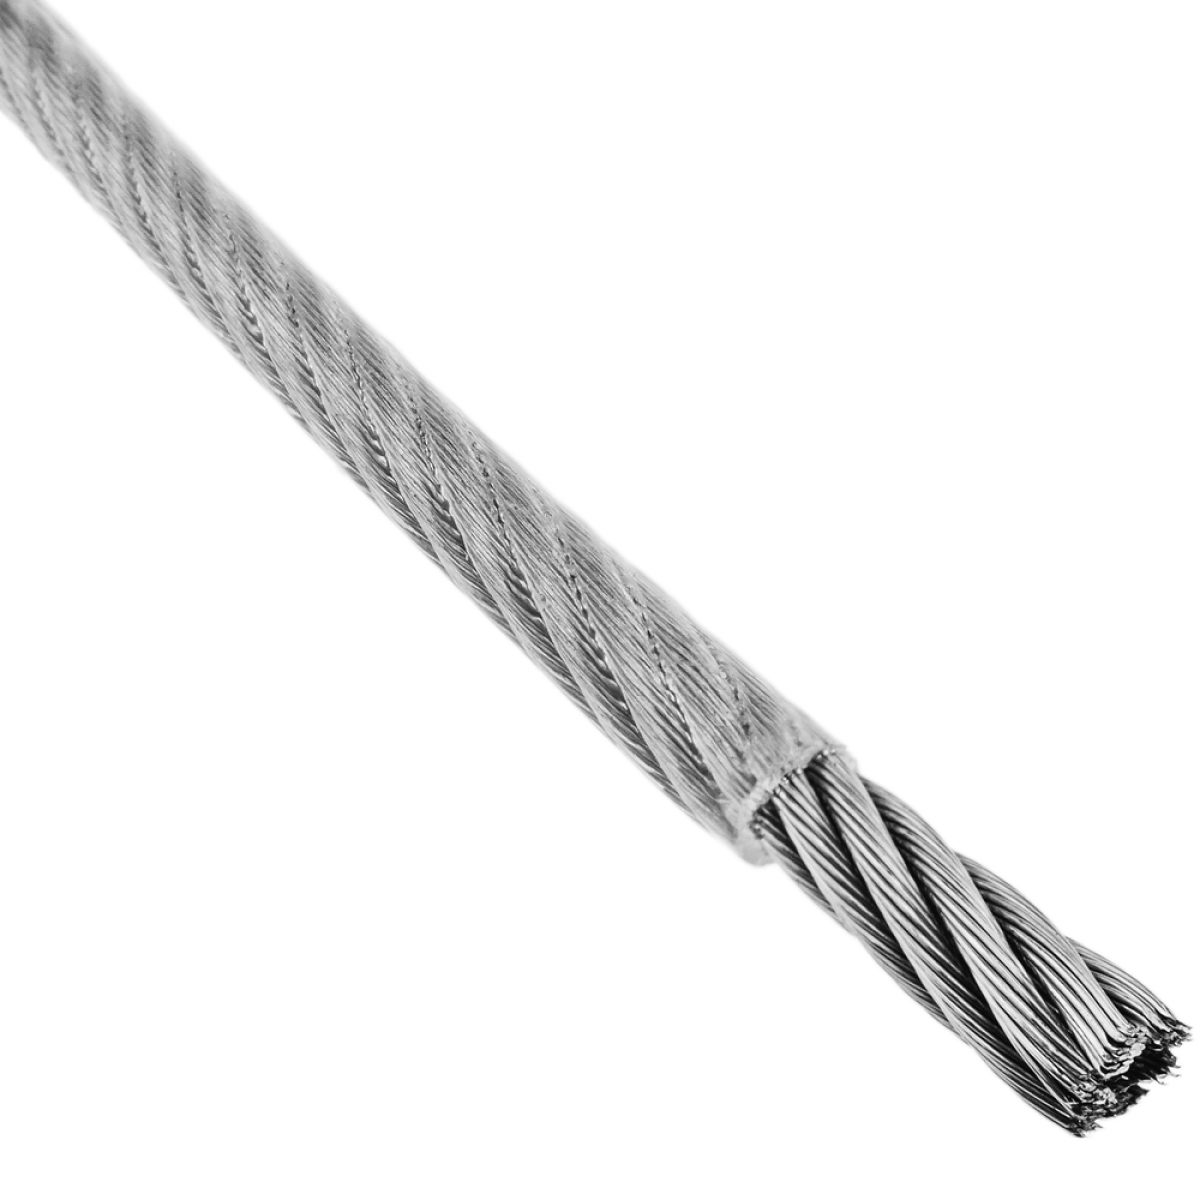 Bematik - Câble en acier inoxydable 7x19 de 6,0 mm. Bobine de 50 m. Revêtement plastique transparent - Fils et câbles électriques